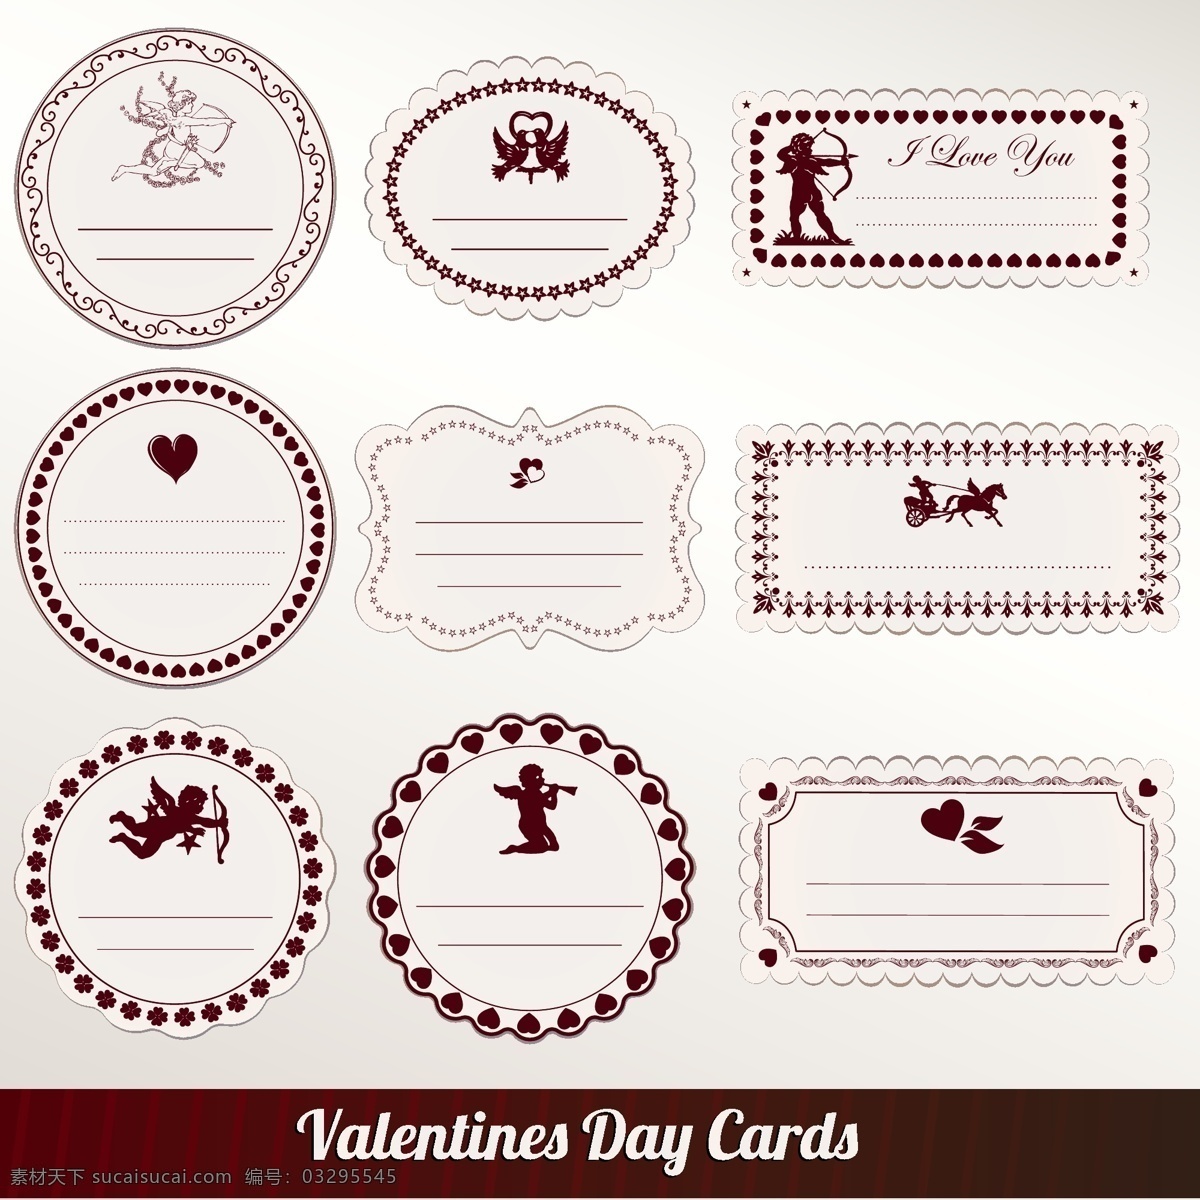 标签 心 爱 卡 徽章 天使 情人 红色 情人节 情人节礼物 卡片 浪漫 丘比特 可爱的一天 情人节卡片 浪漫主义 白色